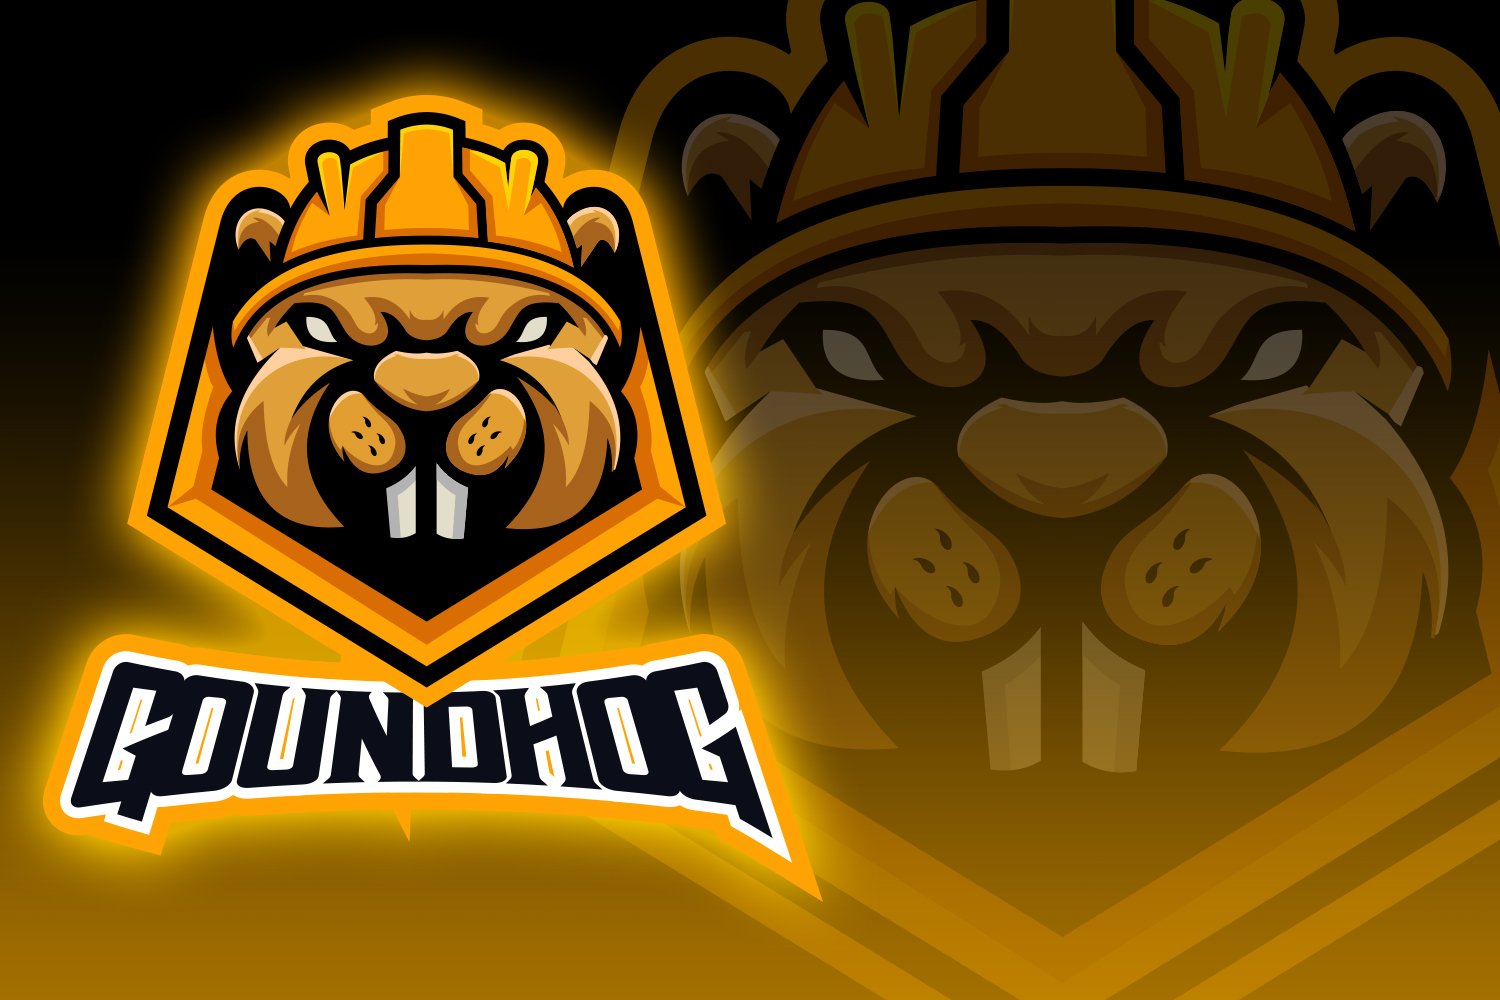 Groundhog Esport Logo cover image.